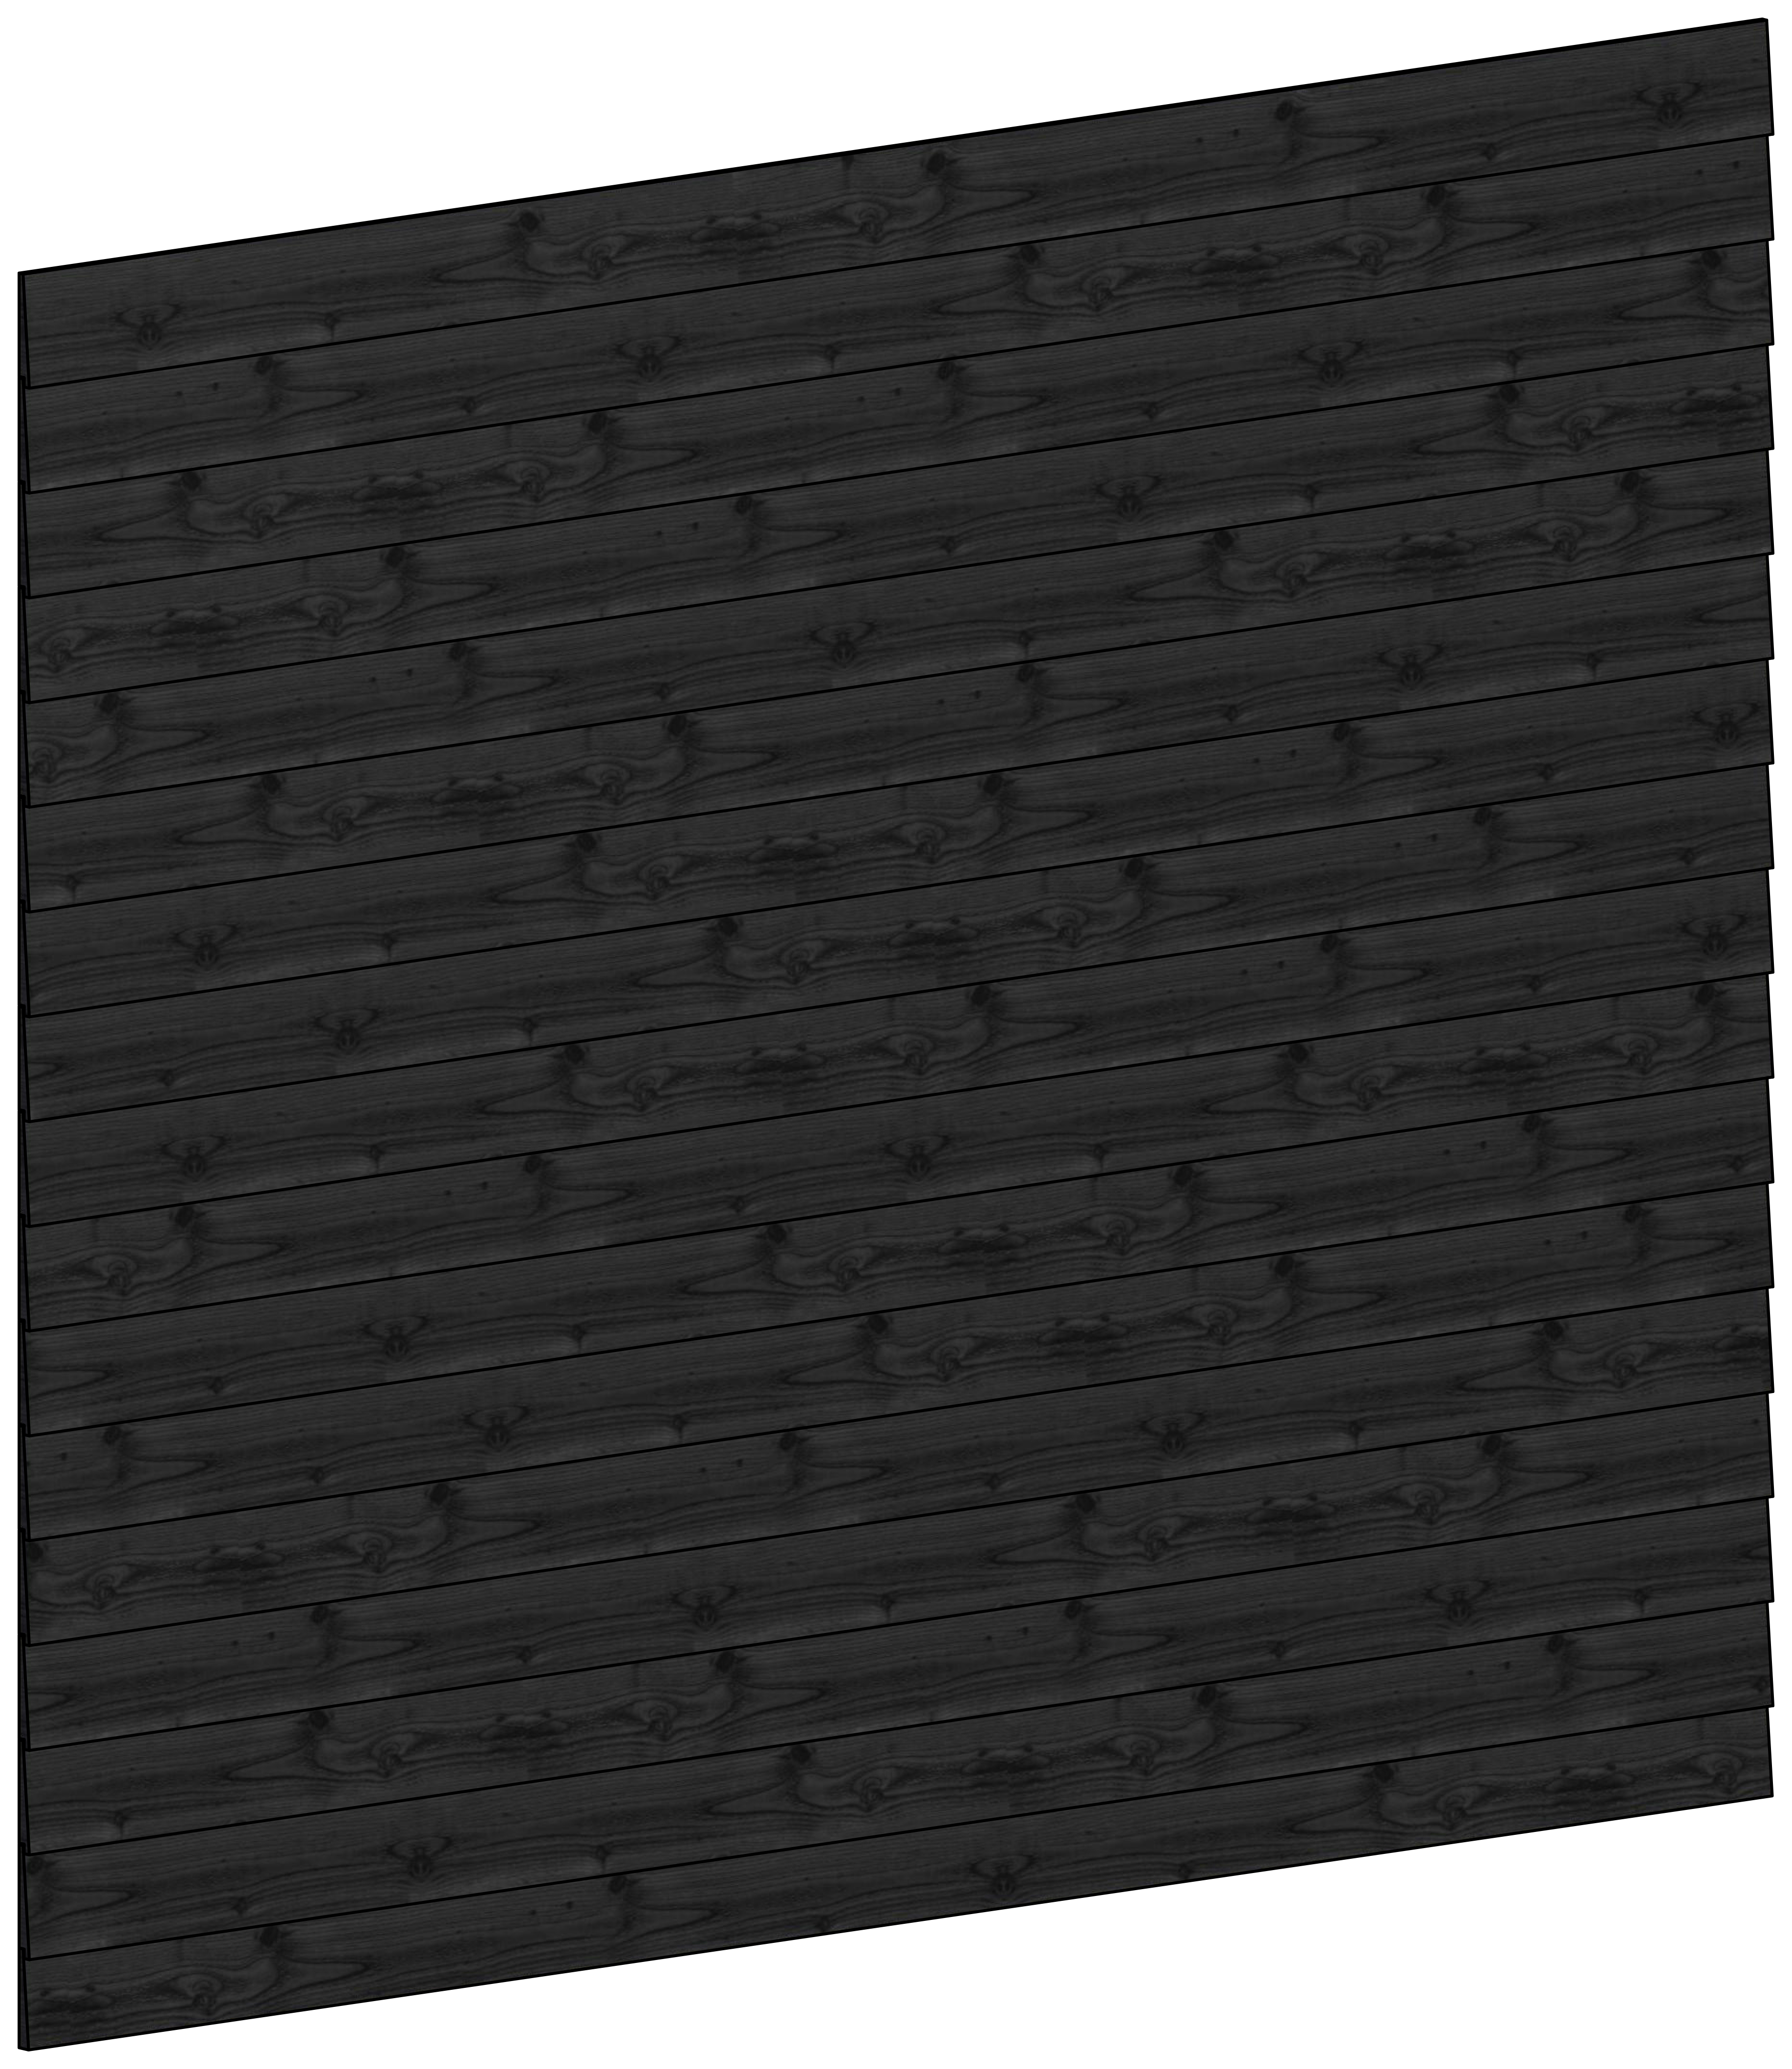 Trendhout | Wandmodule C potdekselplanken zwart | 276x220 cm